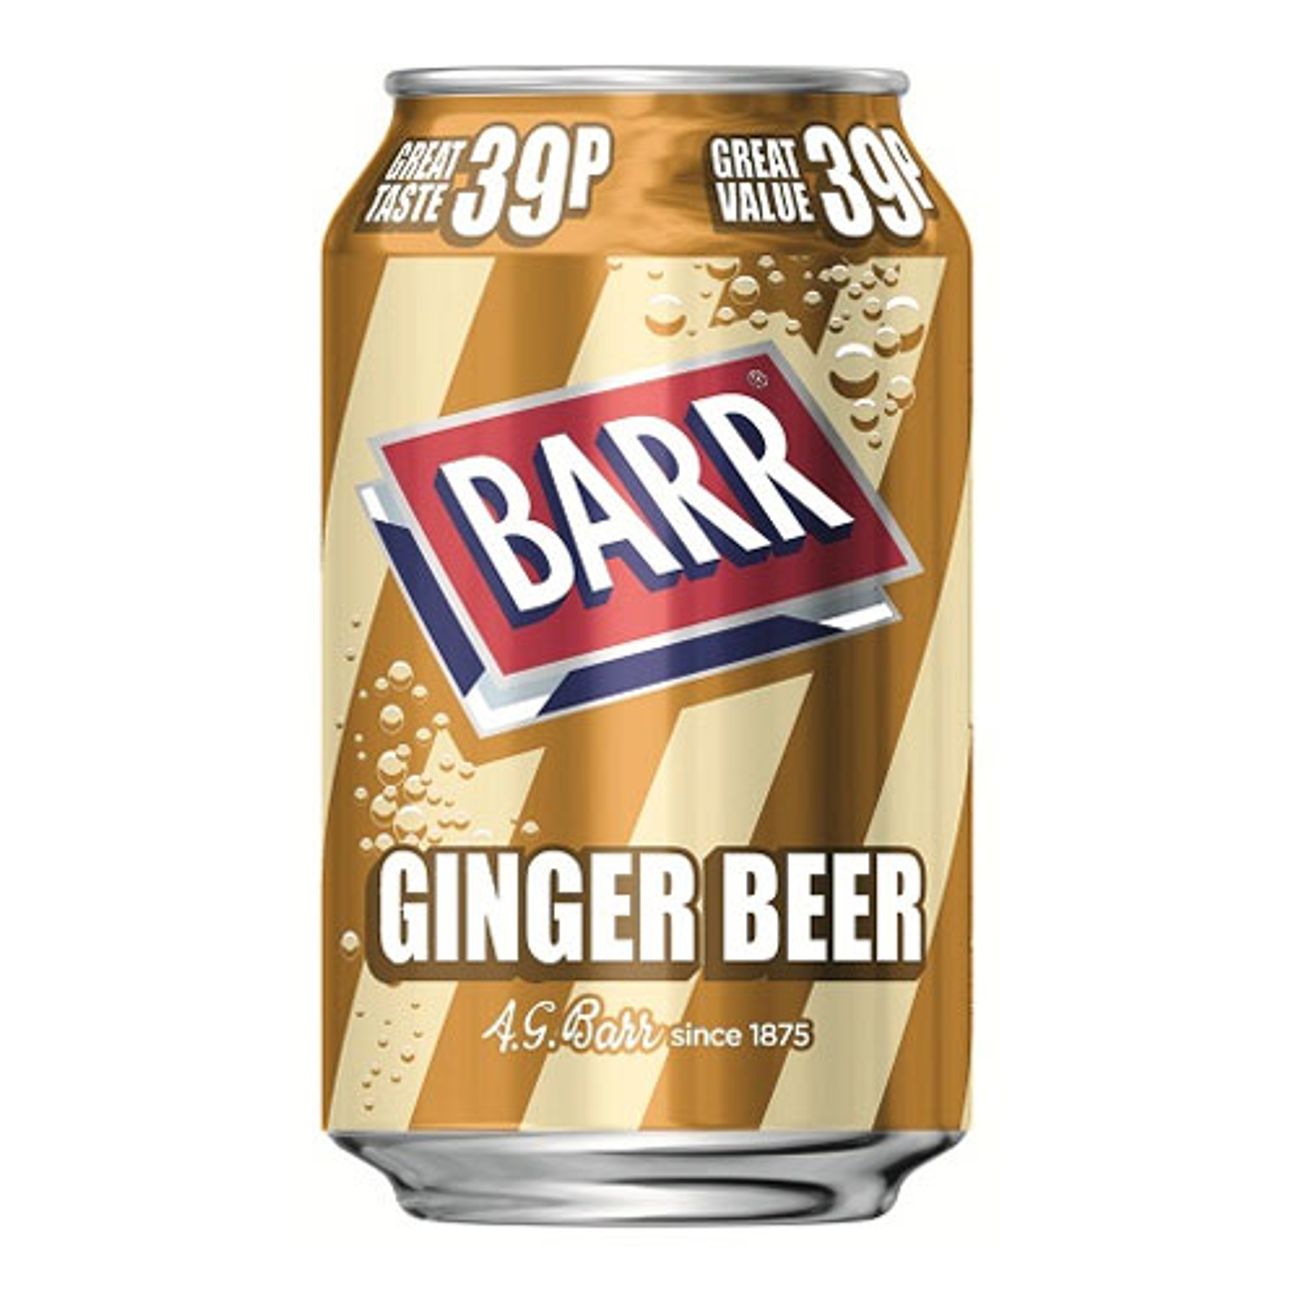 barr-ginger-beer2-1